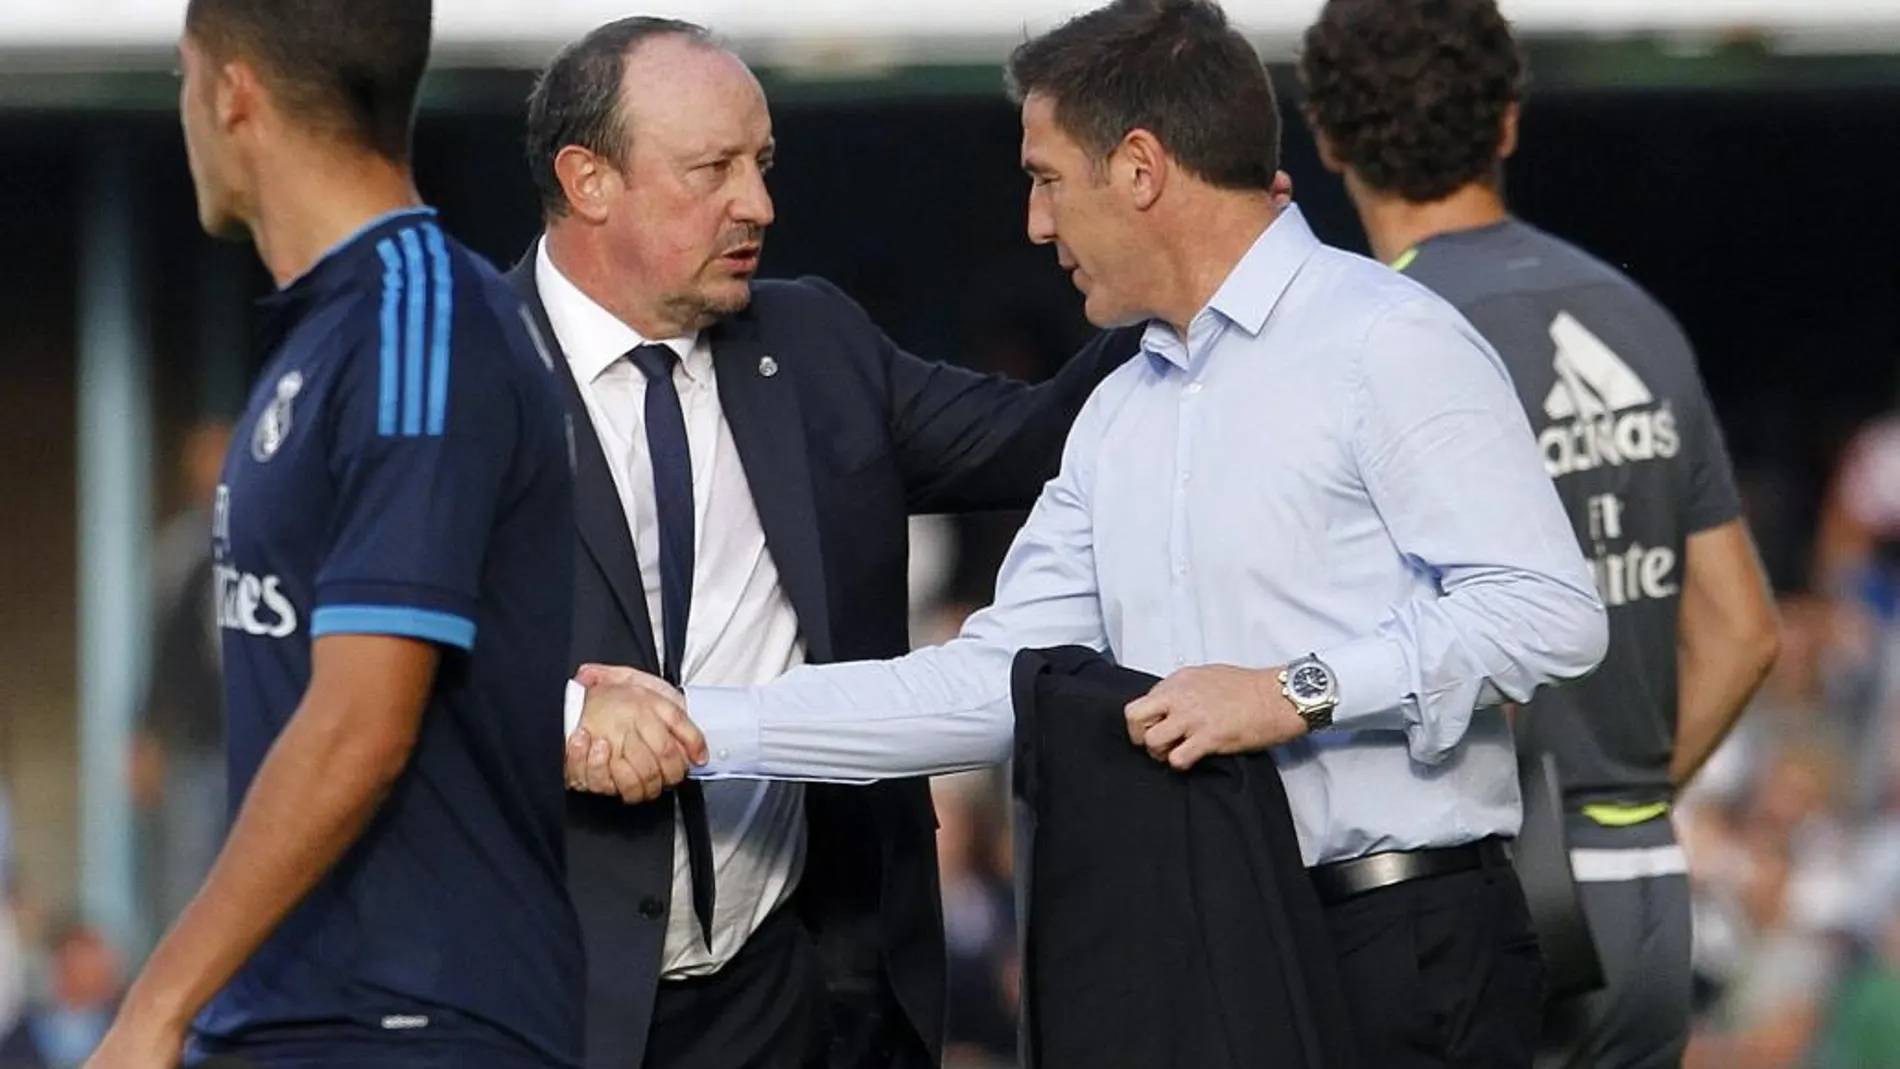 El entrenador del Celta, el argentino Eduardo Berizzo saluda al del Real Madrid, Rafael Benítez, tras el partido